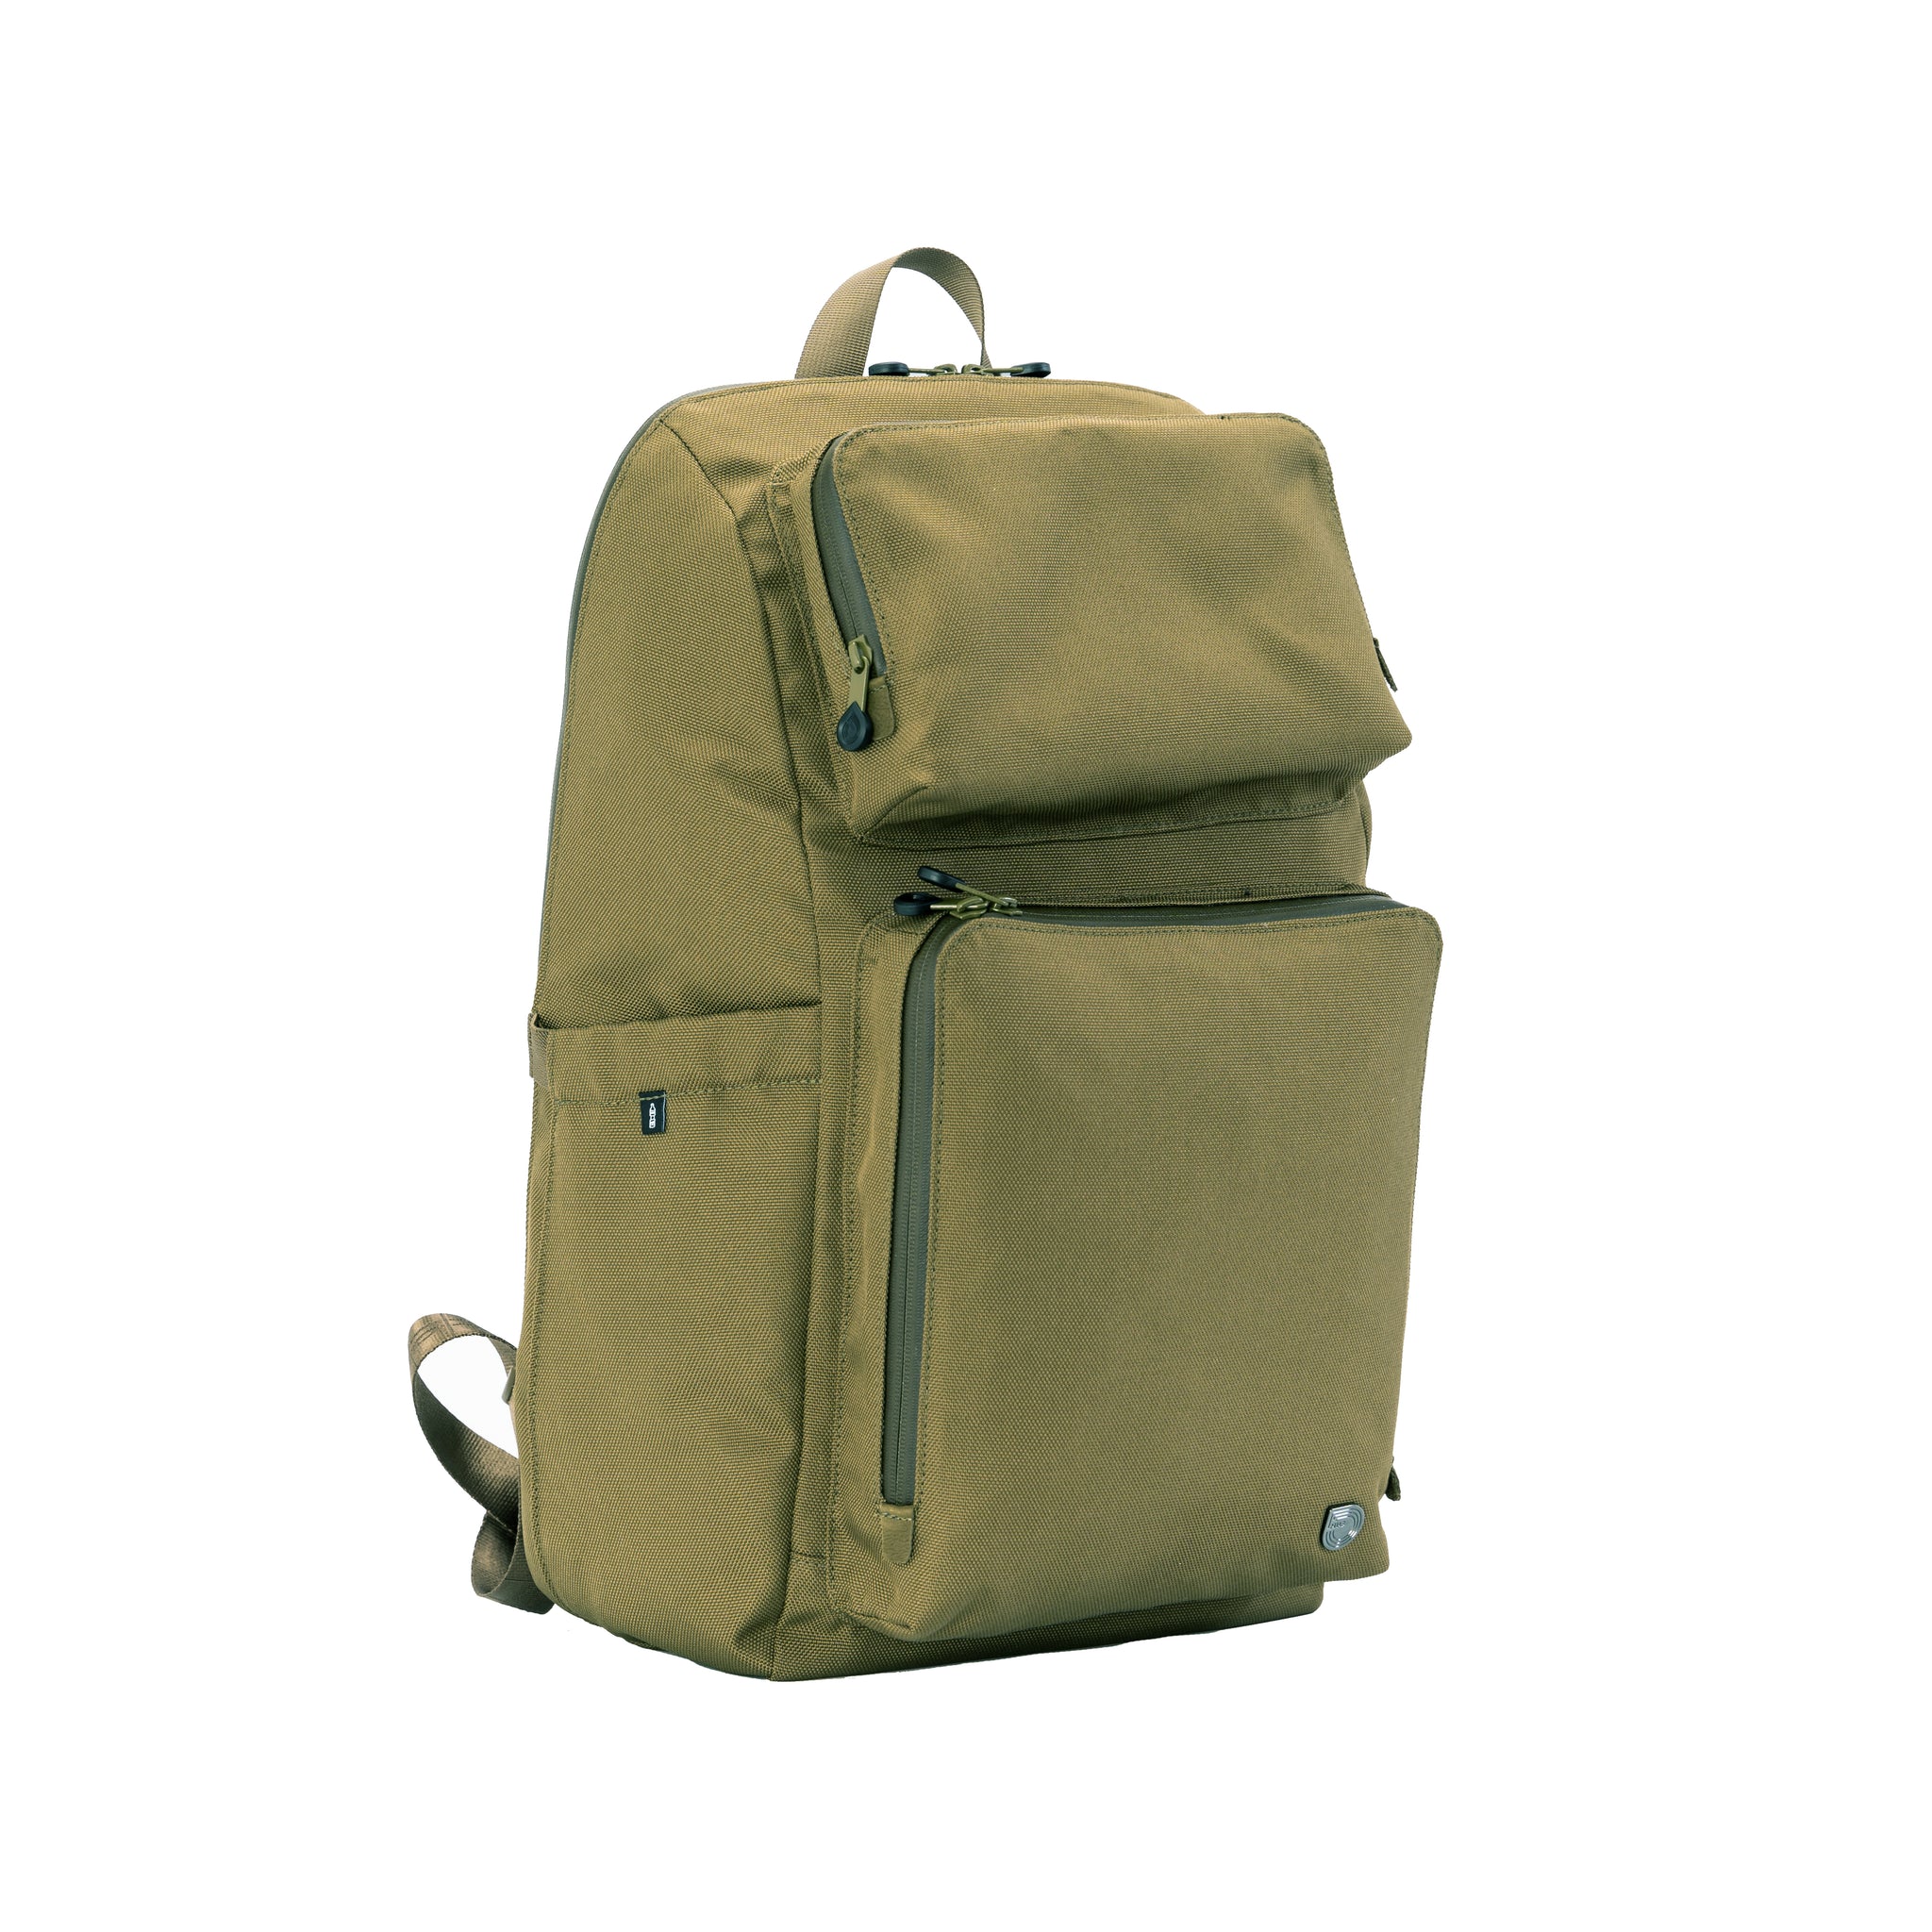 多功能用途 (恆常版) - Bibi 背包 - 橄欖綠